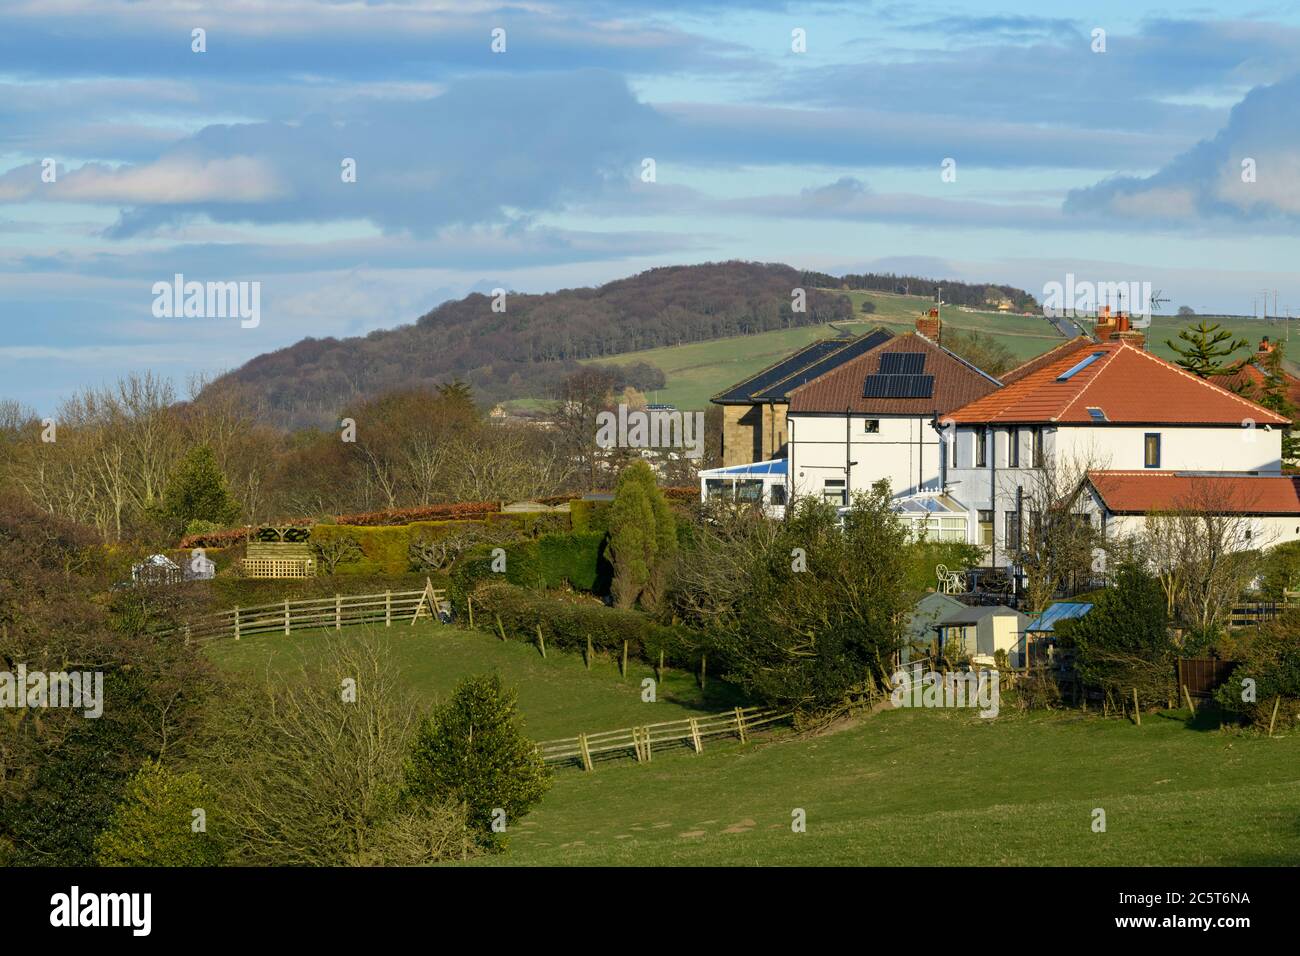 Casas adosadas en barrios verdes, campos de granja y Otley Chevin (bosque de ladera) - Menston Village, West Yorkshire, Inglaterra, Reino Unido. Foto de stock